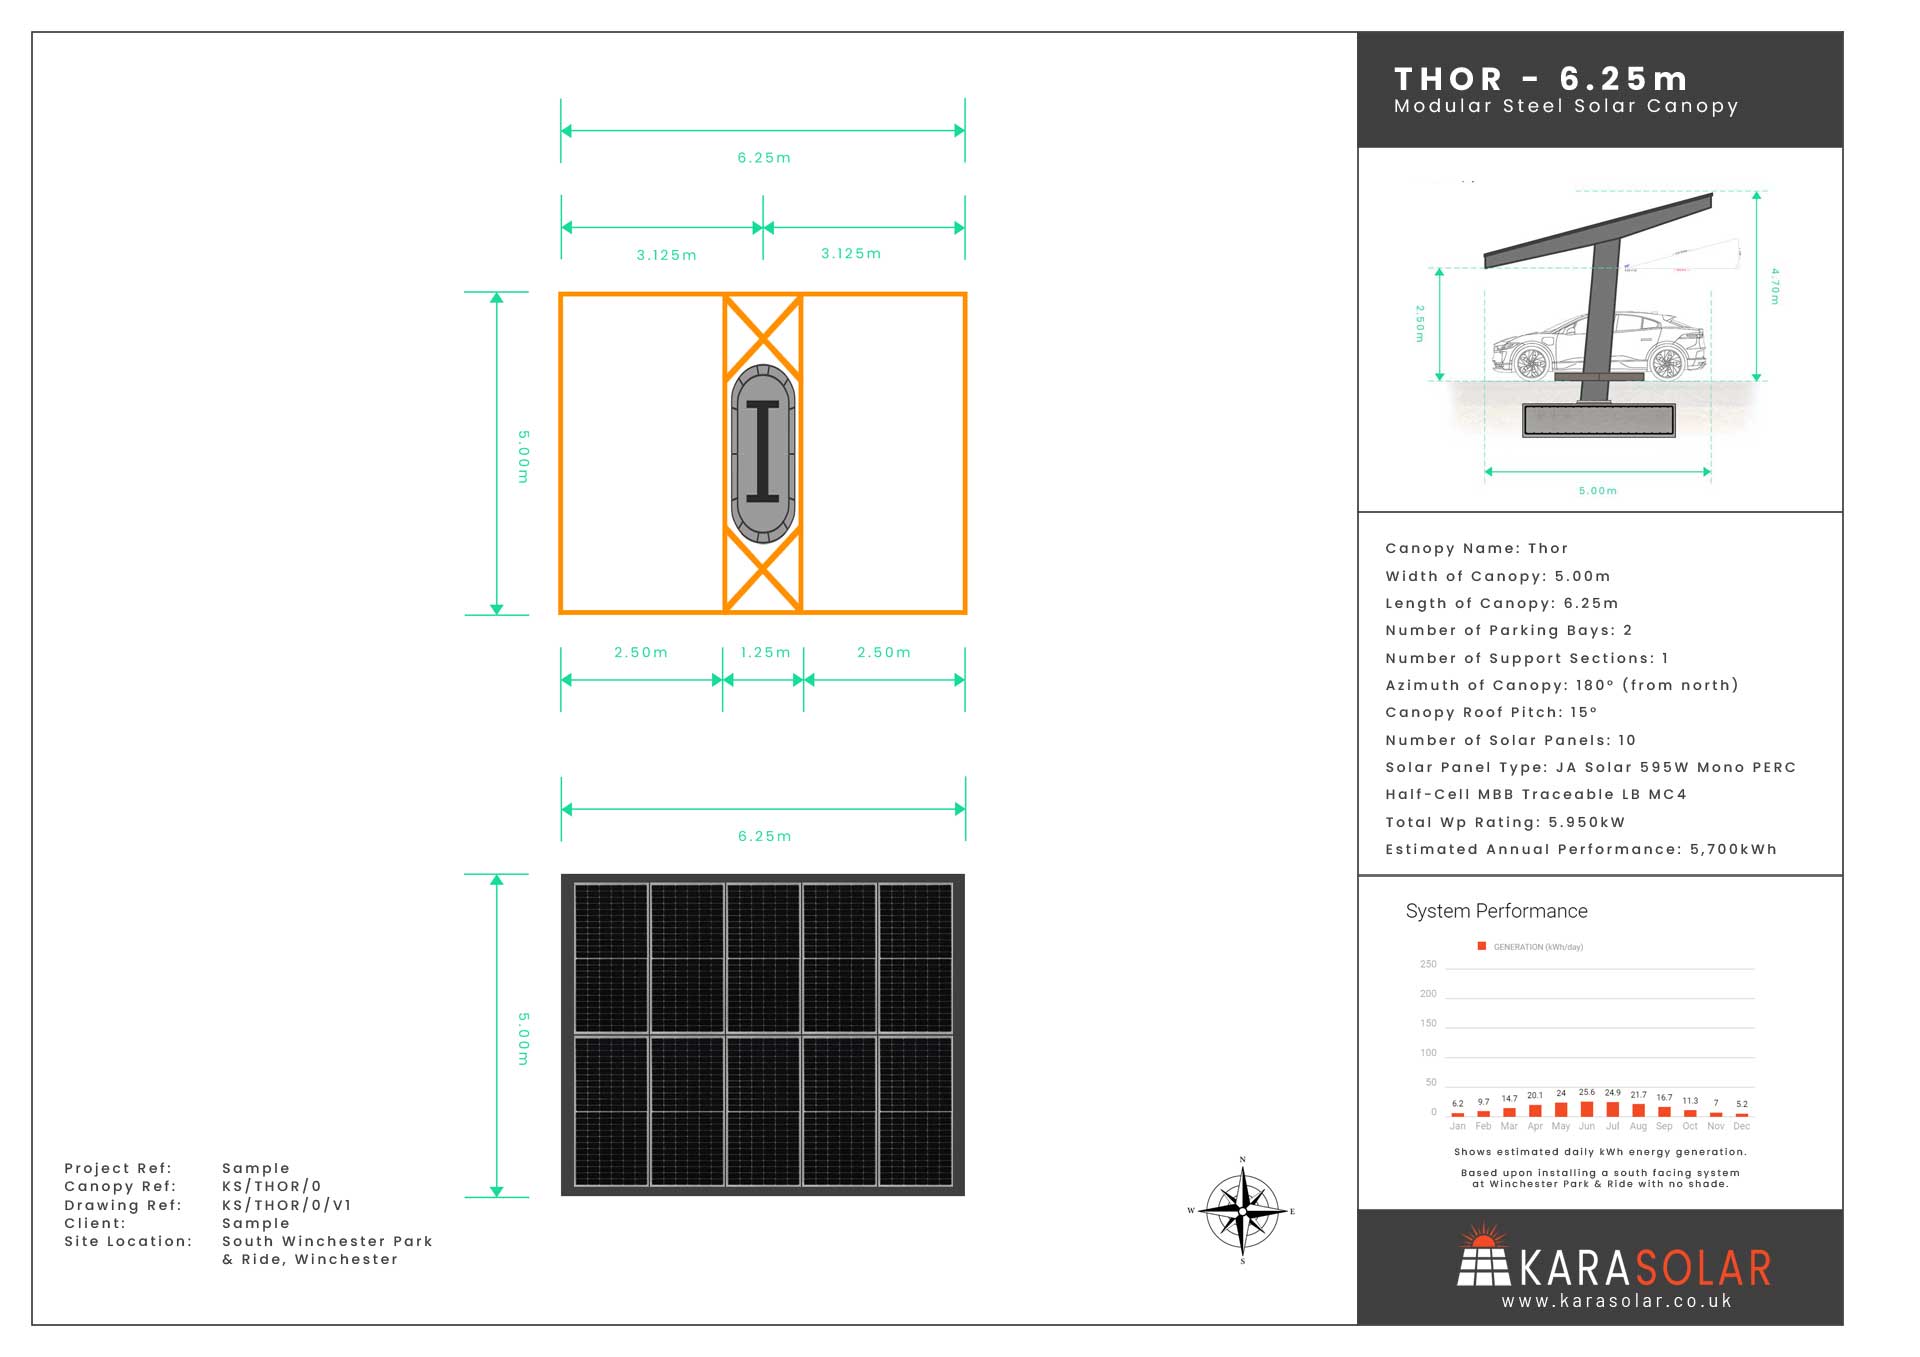 Thor-Solar-Canopy-Datasheet-Sample-06.25m